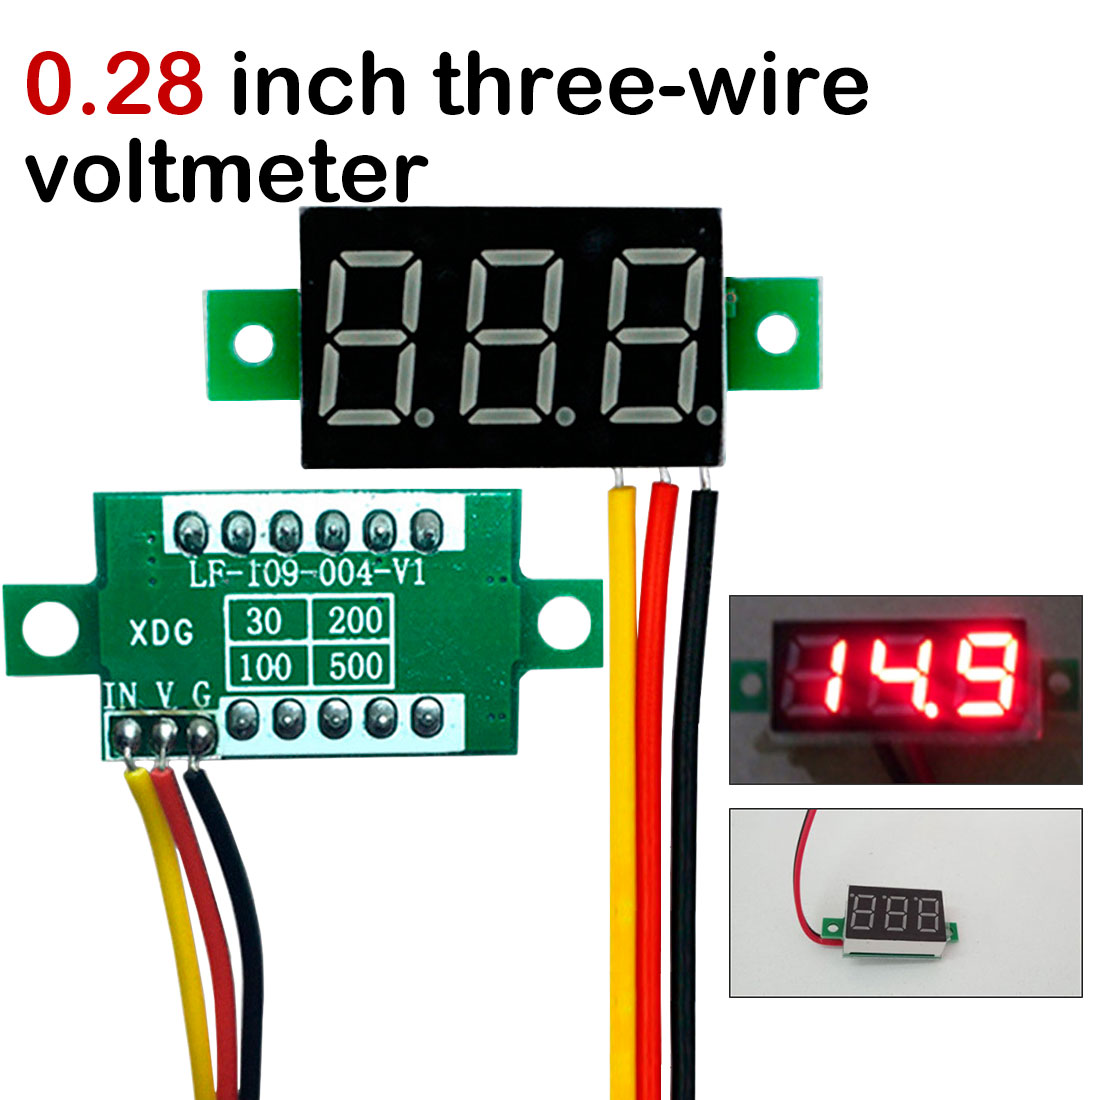 Details about   DC0-100V LED Mini Digital Voltmeter Volt Meter Gauge Voltage Panel Meter 3wir.AU